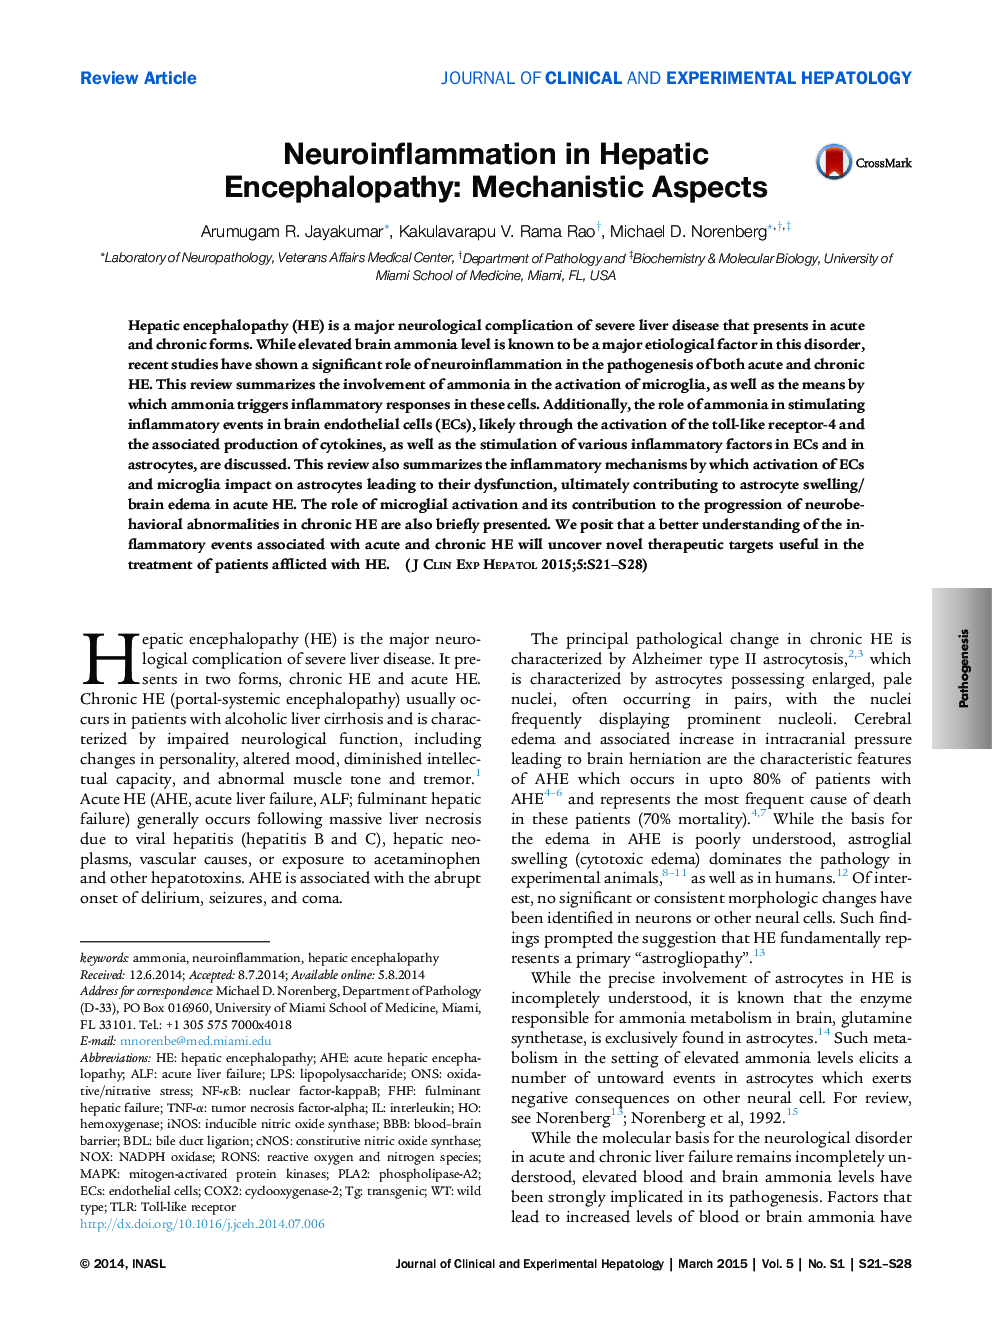 التهاب عصبی در انسفالوپاتی کبدی: جنبه های مکانیکی 